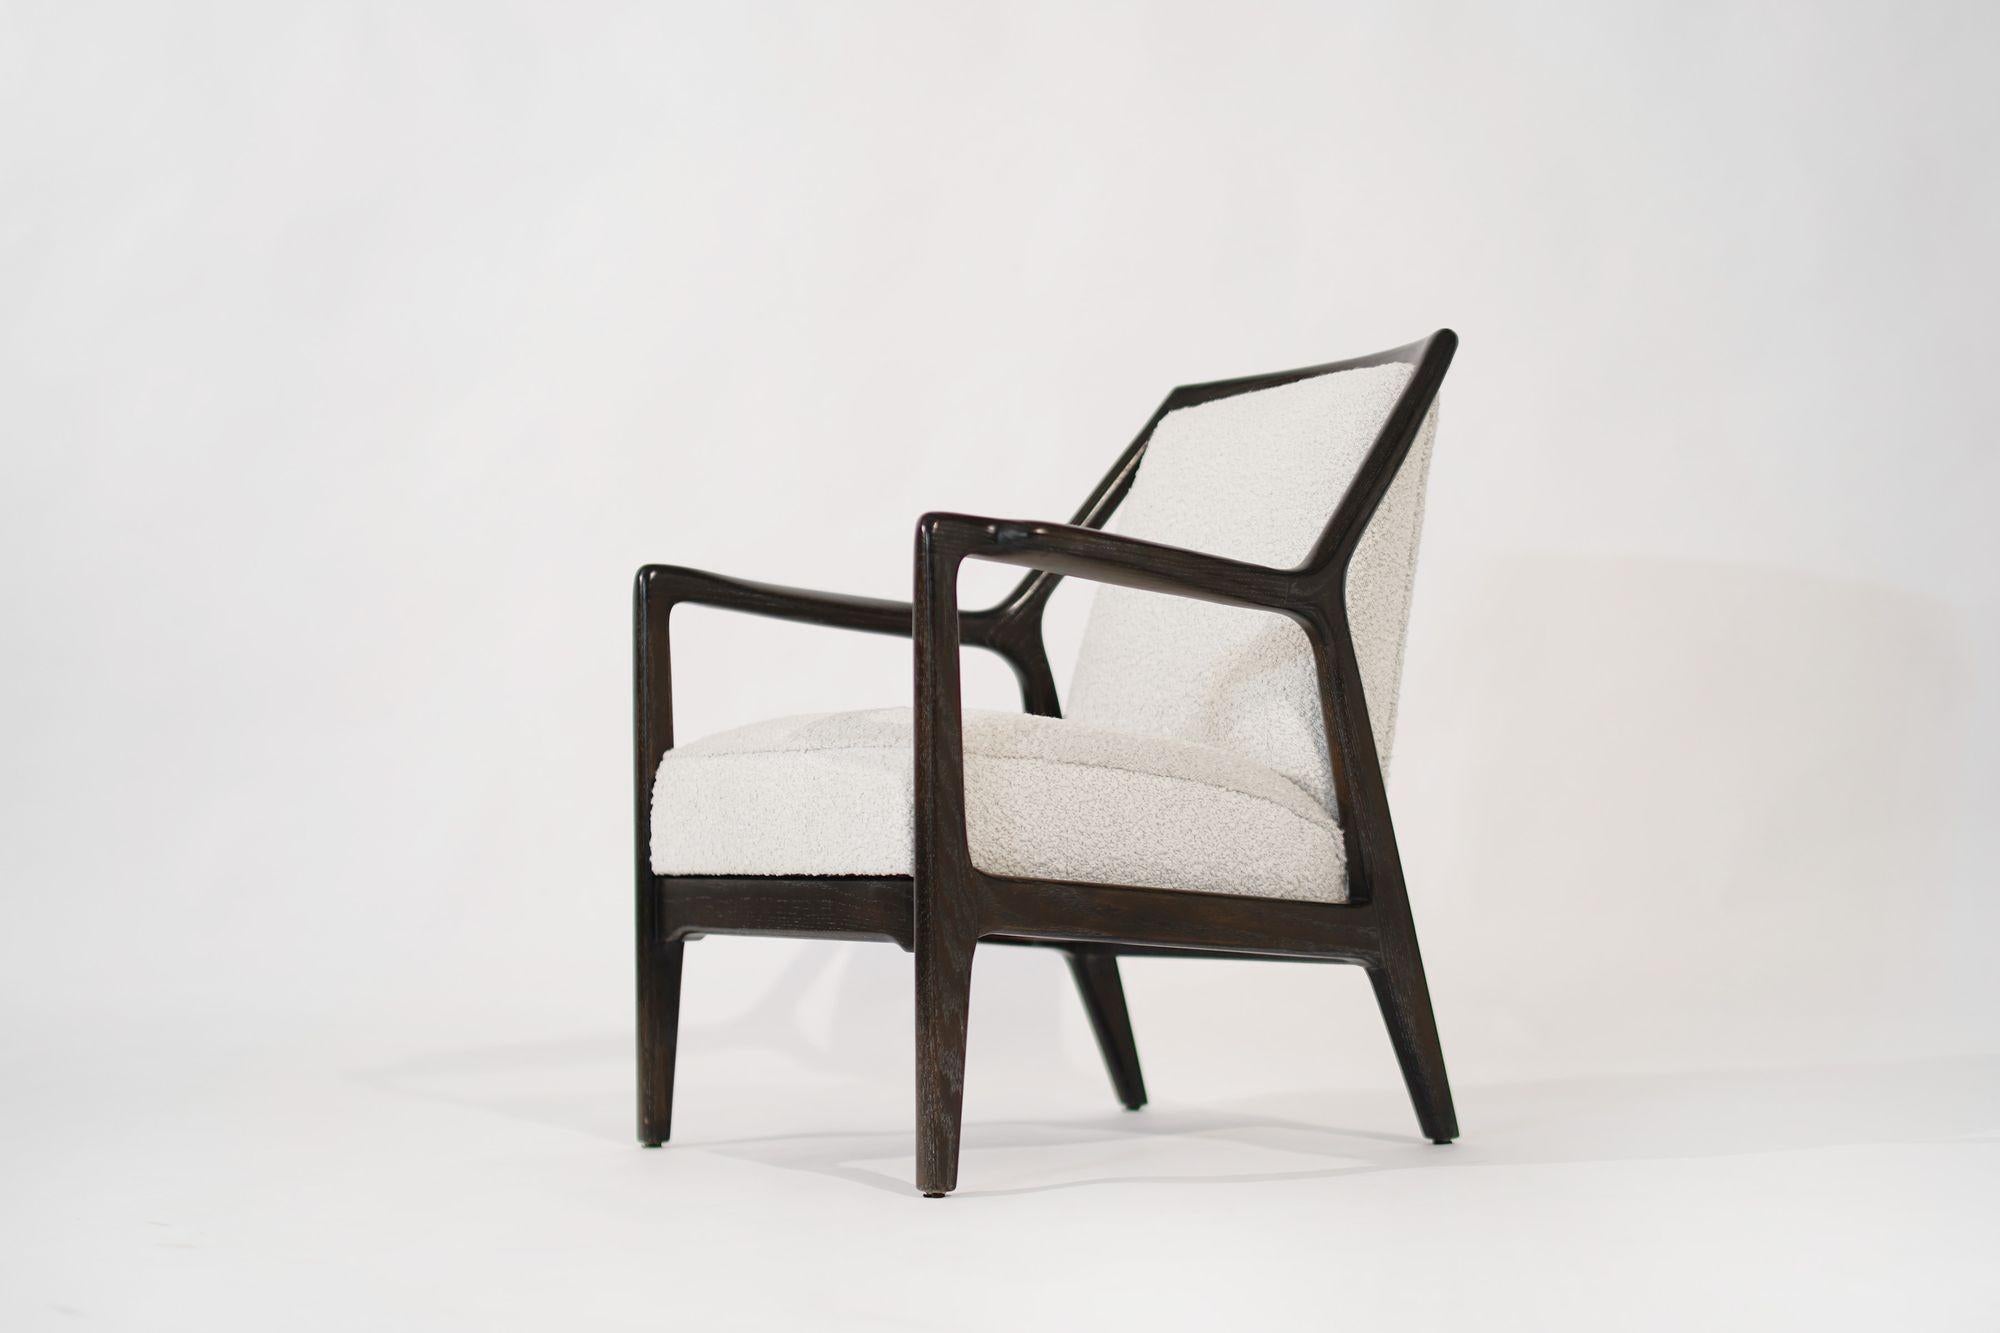 American Lounge Chair in Limed Oak by Jack Van Der Molen, C. 1950s For Sale